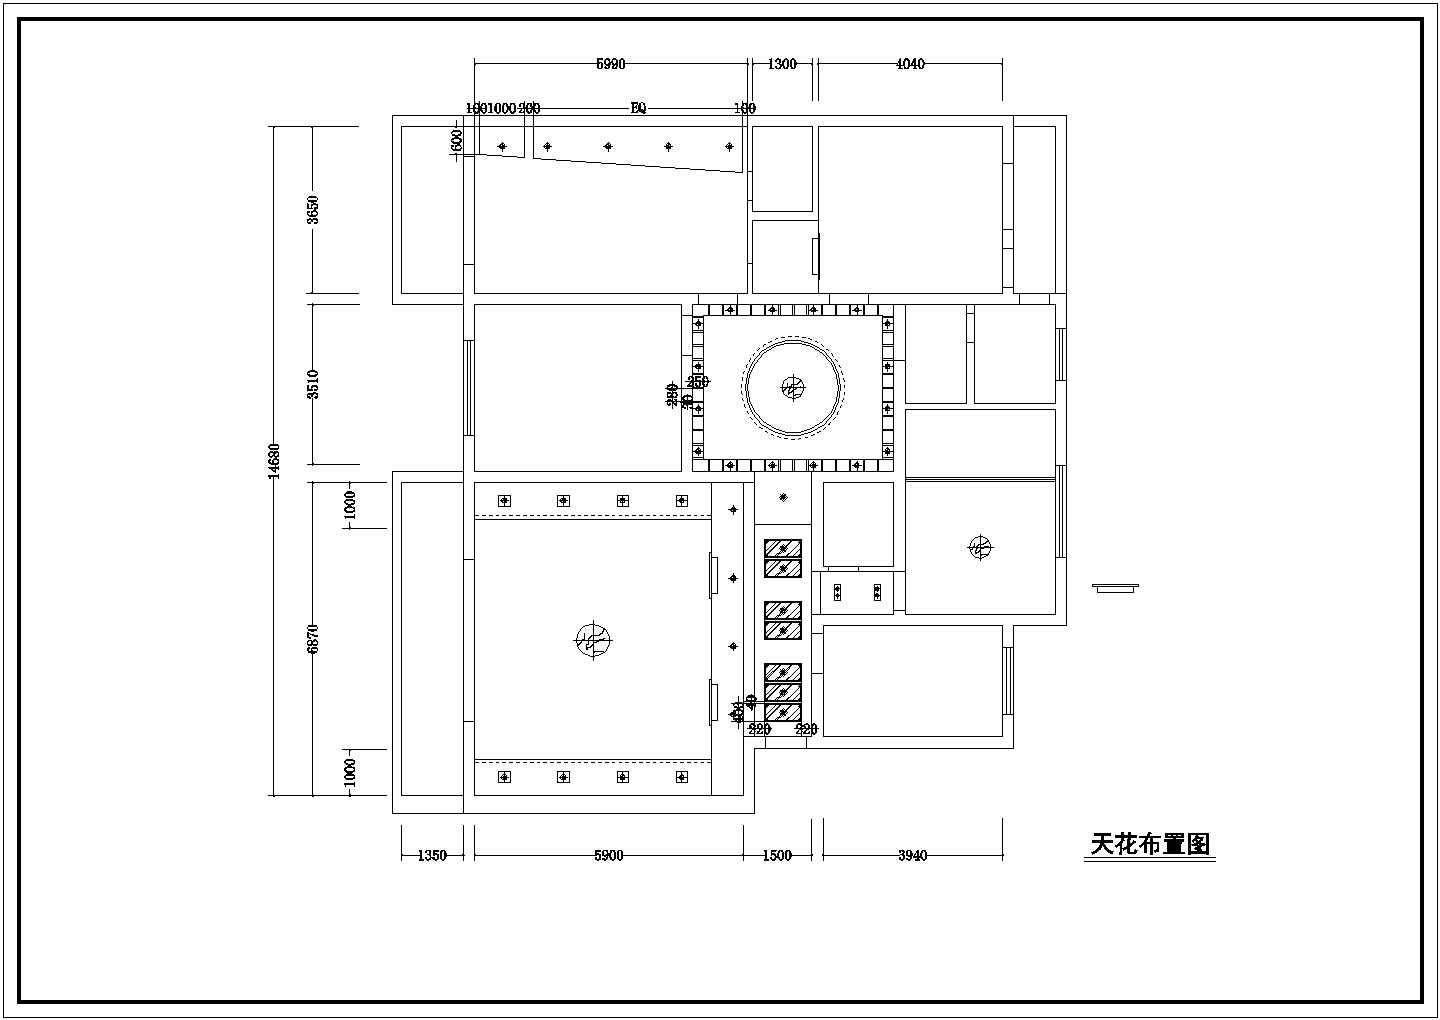 颐和花园住宅楼全套家装施工设计方案图纸(含天花布置图)